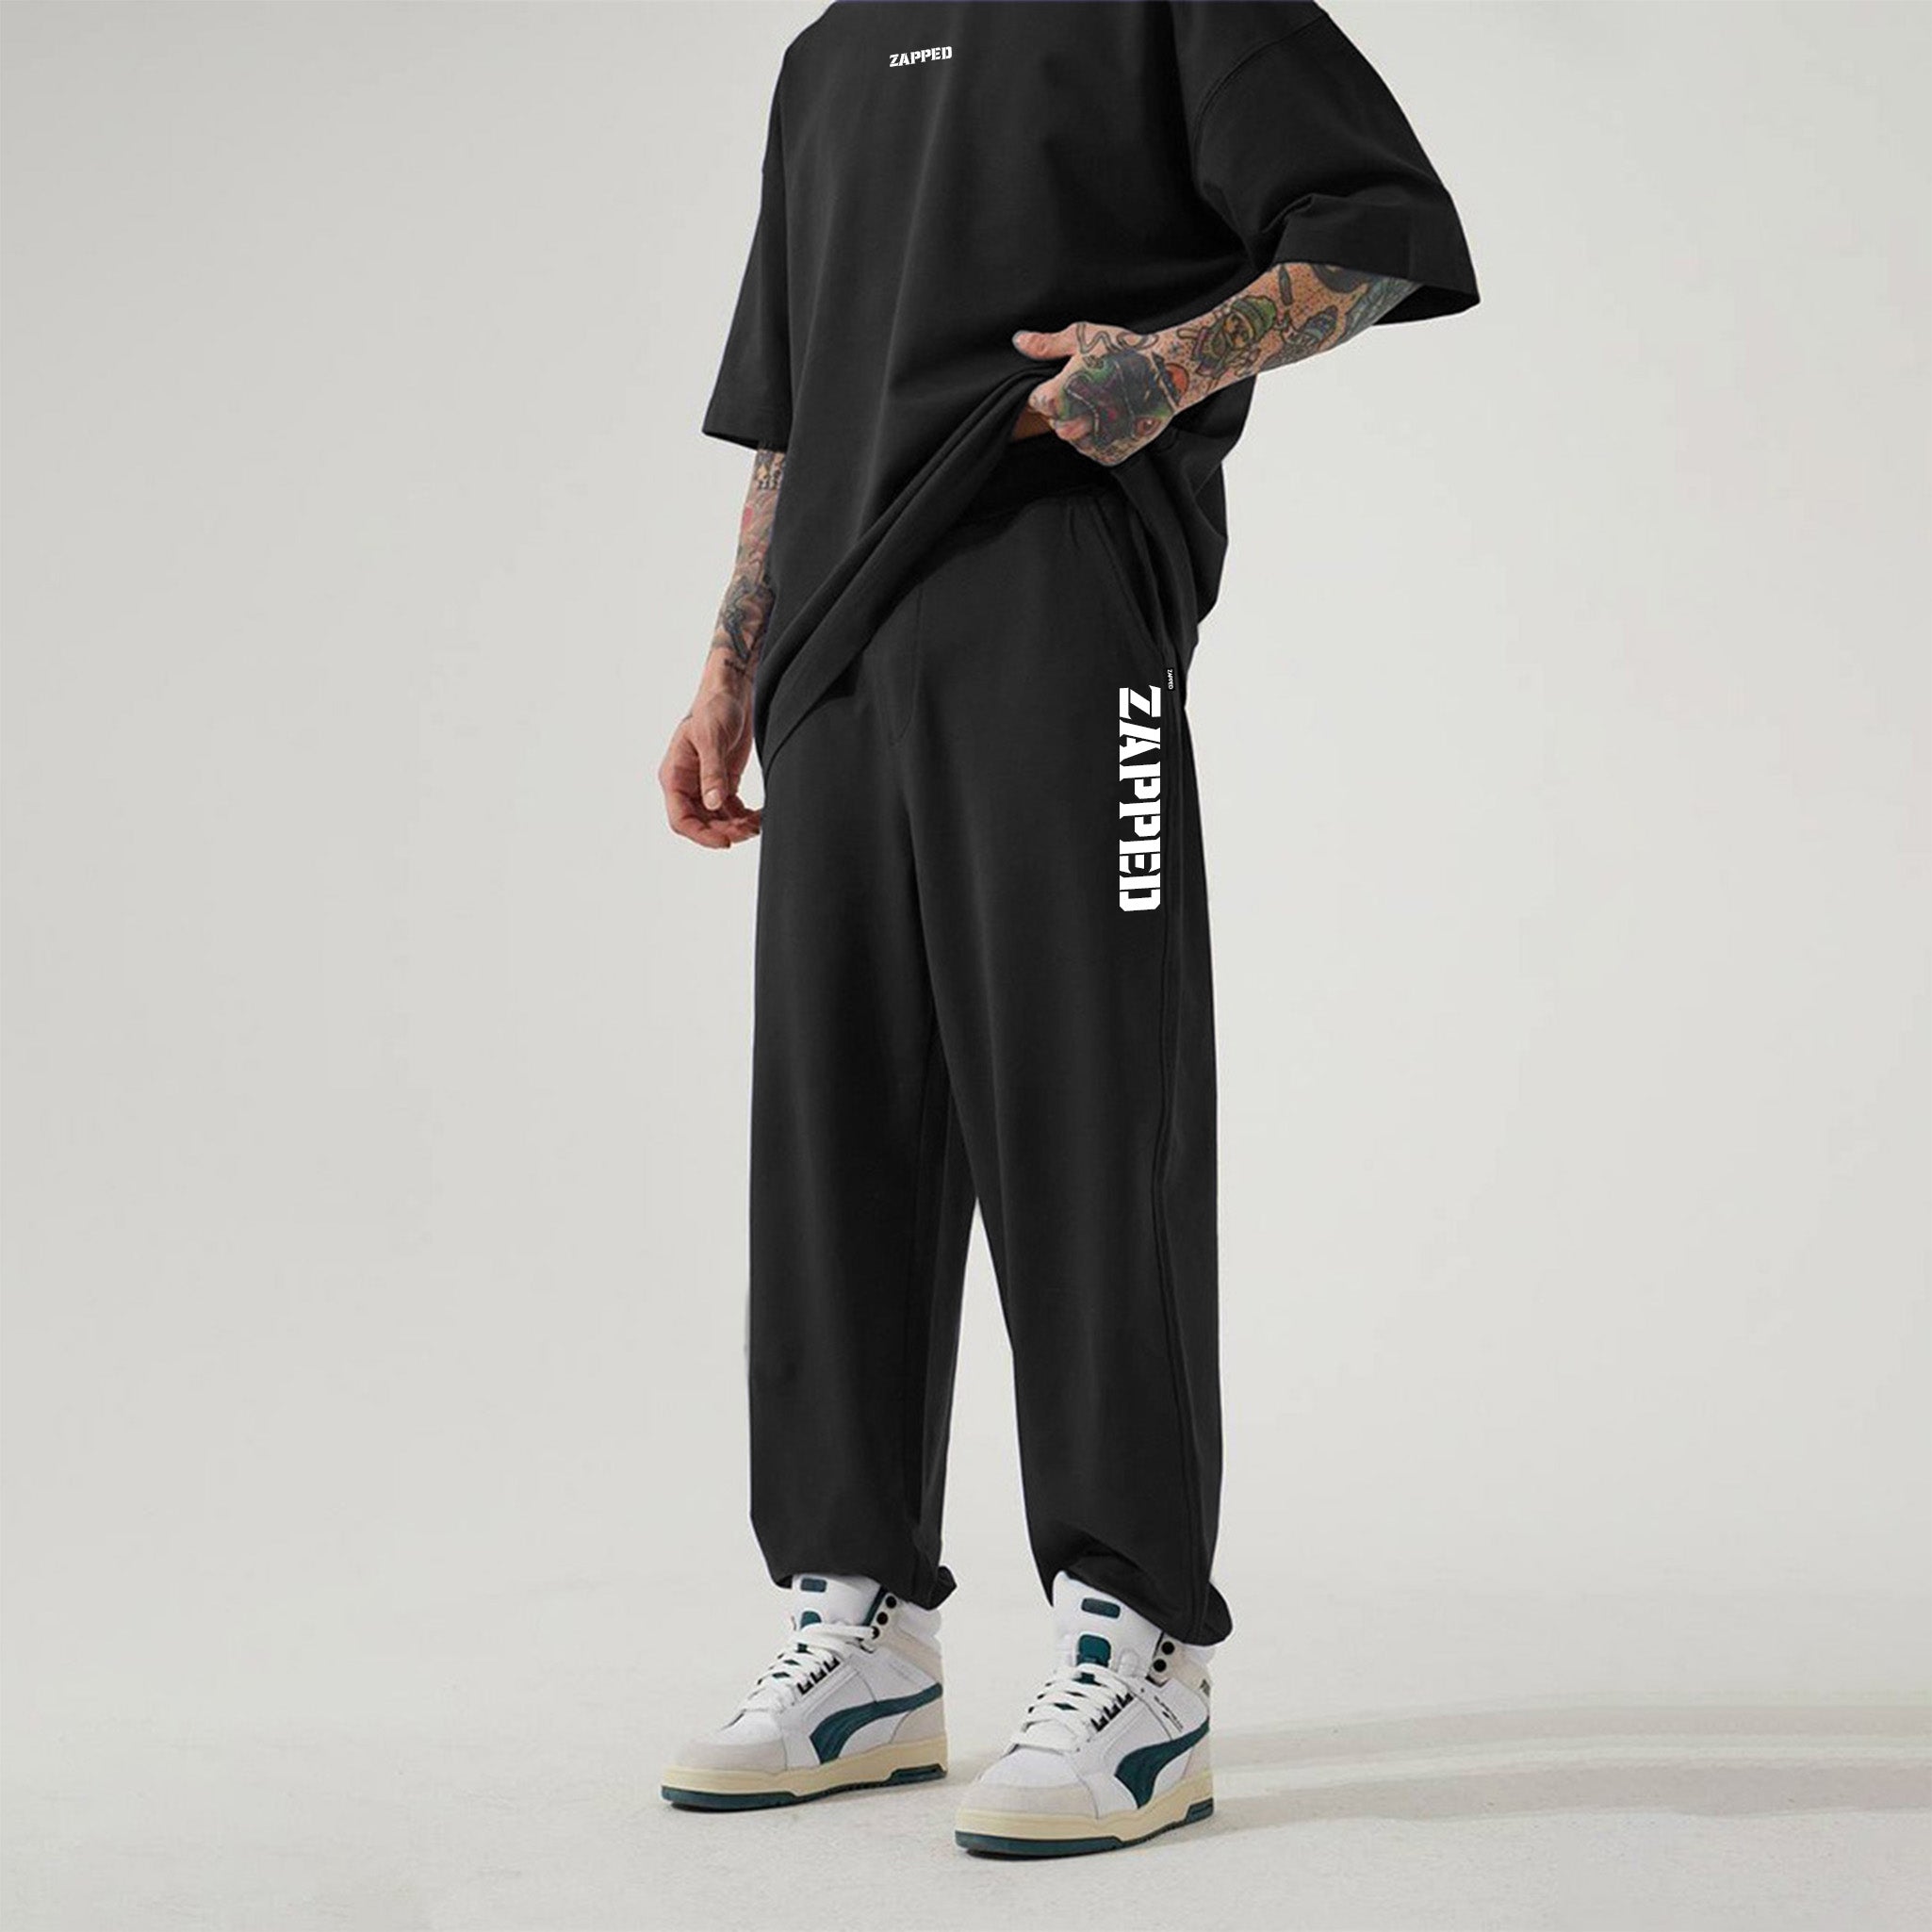 Zapped Oversize T-Shirt & Jogger Pant Cord Set - Black